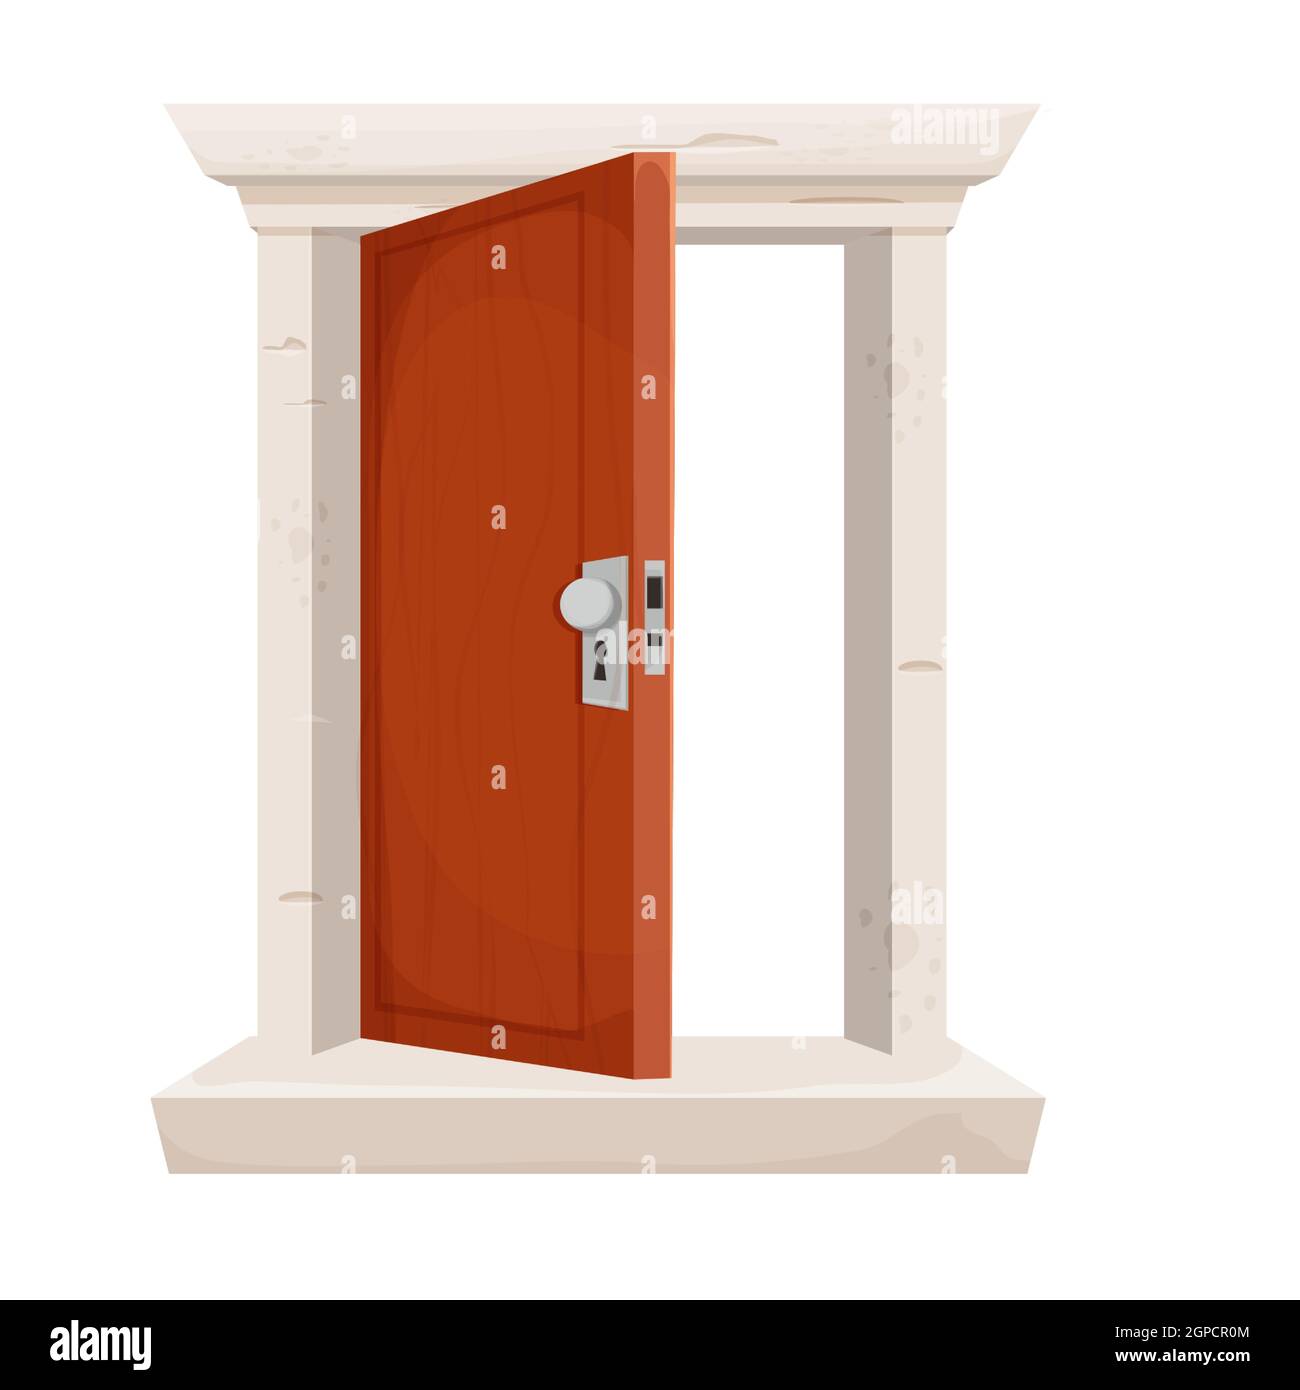 Offene Tür, Eingang im Cartoon-Stil isoliert auf weißem Hintergrund. Hölzerne Tür mit Steinrahmen. Detailliertes, strukturiertes Element. Vektorgrafik Stock Vektor